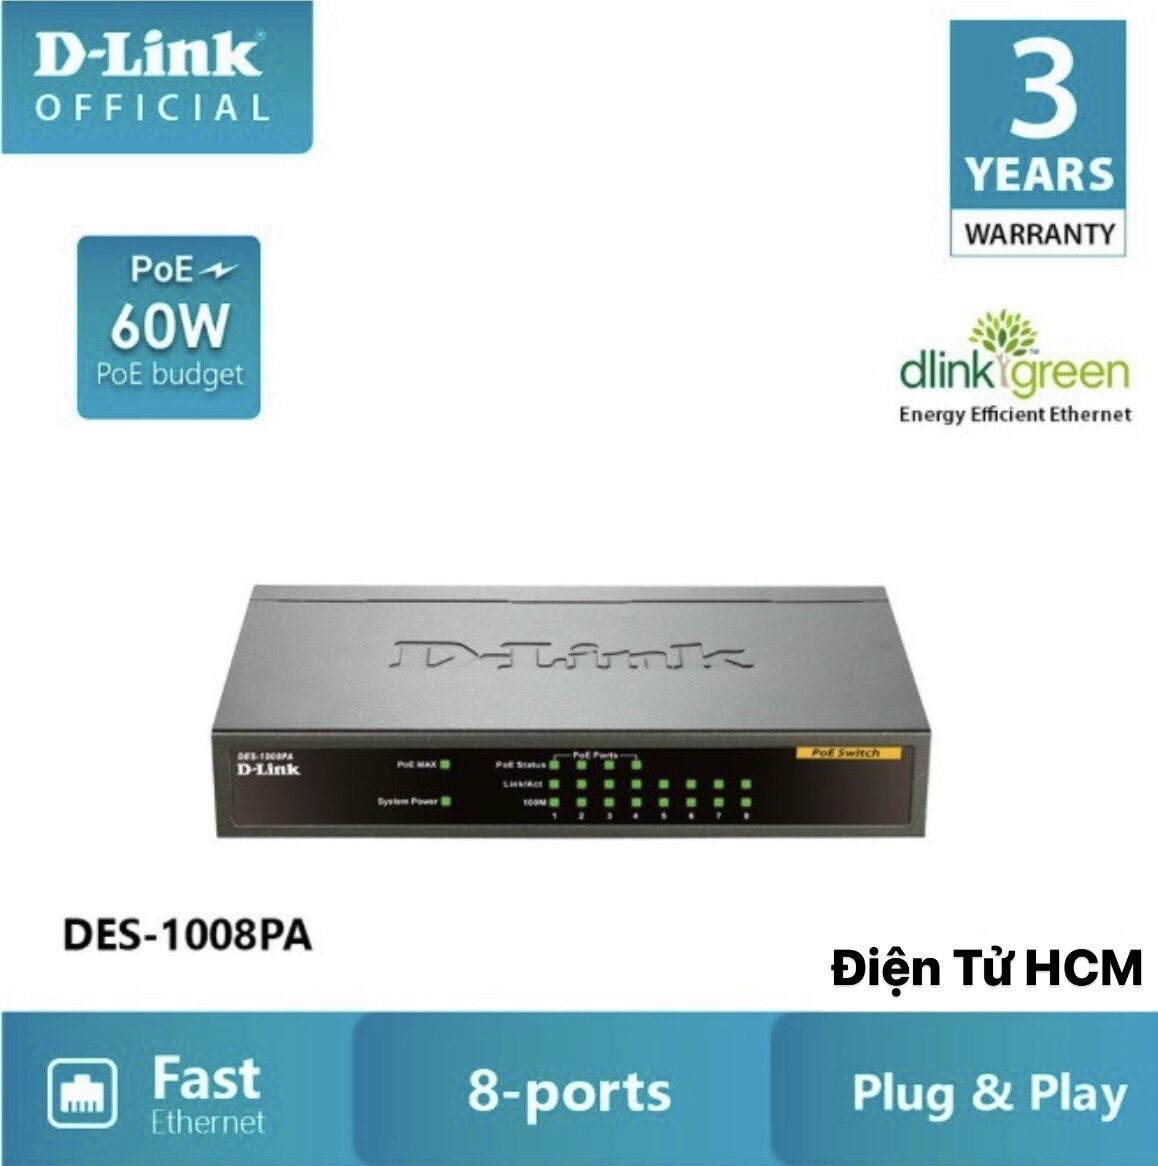 D-LINK DES-1008PA - Bộ chia cổng mạng 8 cổng 10 100 Mbps với 4 cổng PoE